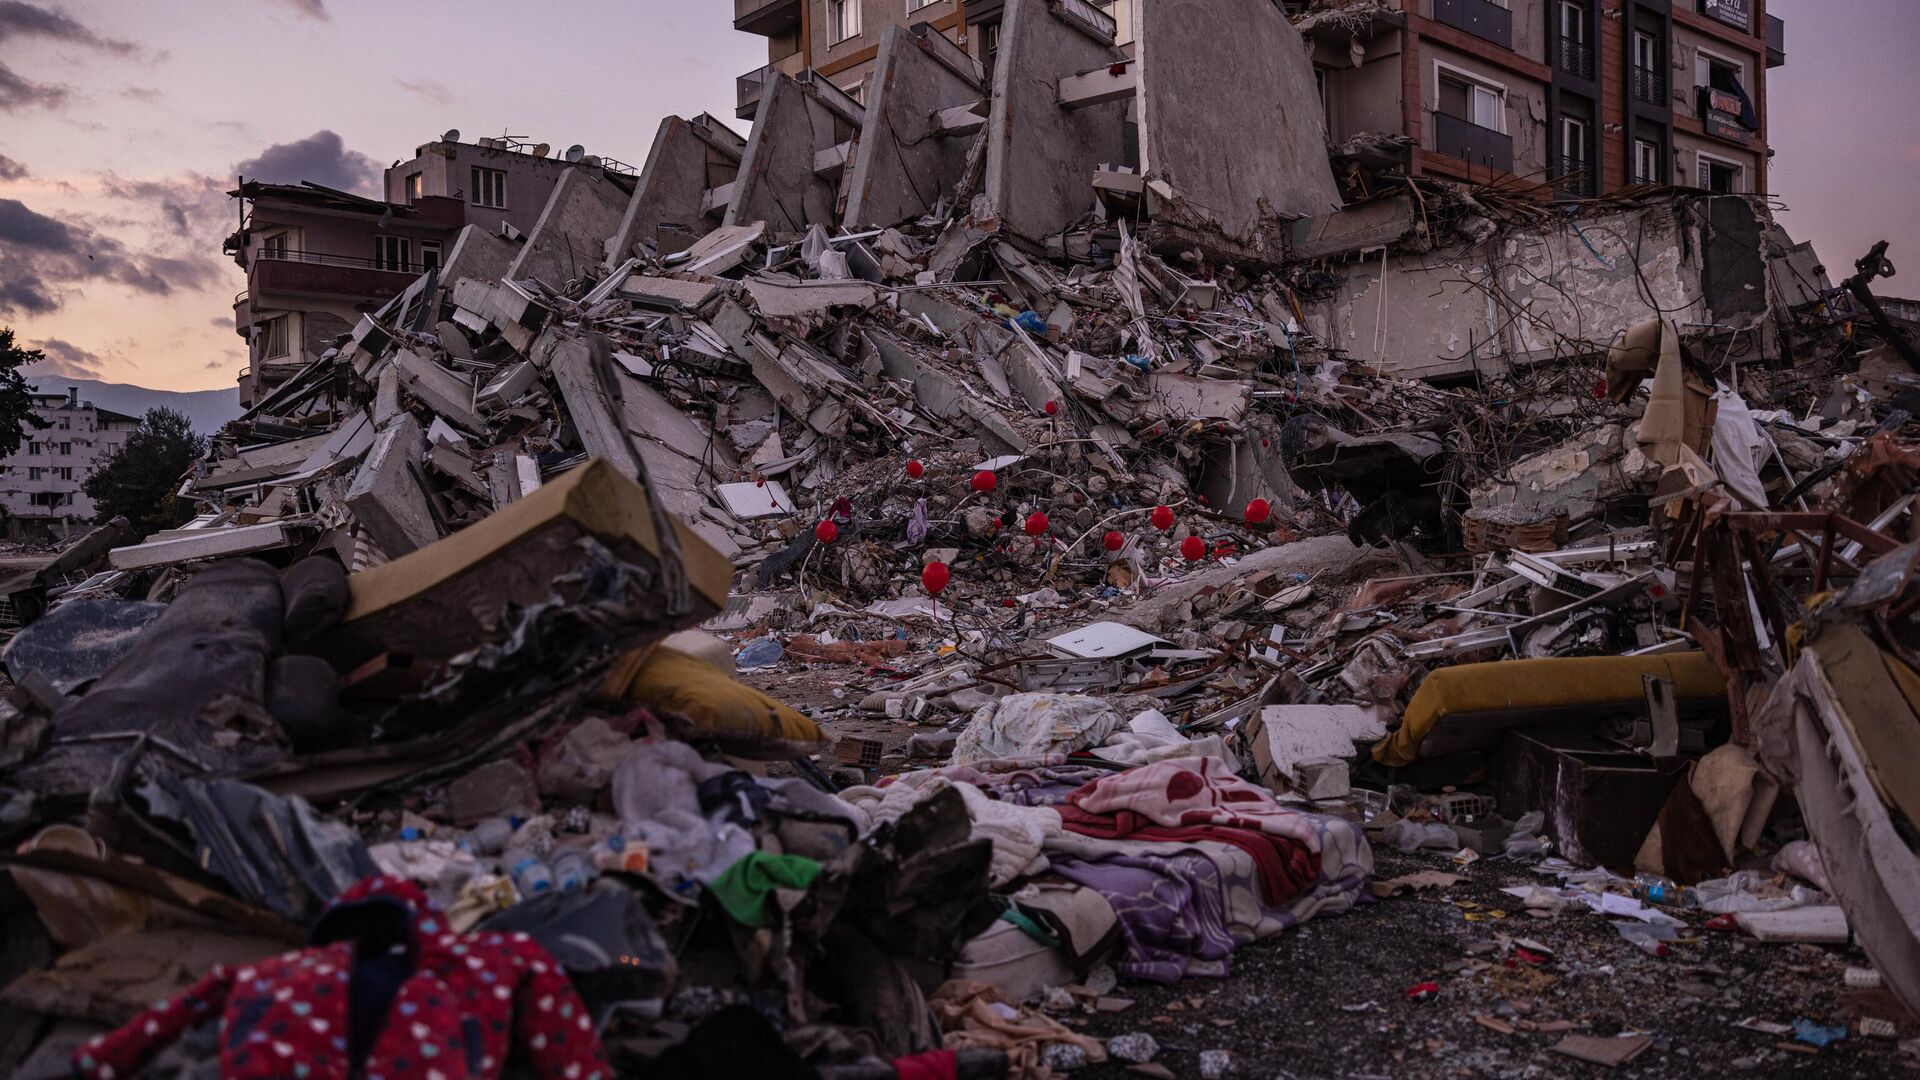 Красные воздушные шары, висящие на обломках рухнувших зданий как символ последних игрушек детей, погибших во время землетрясения в турецком городе Антакья - Sputnik Беларусь, 1920, 05.03.2023